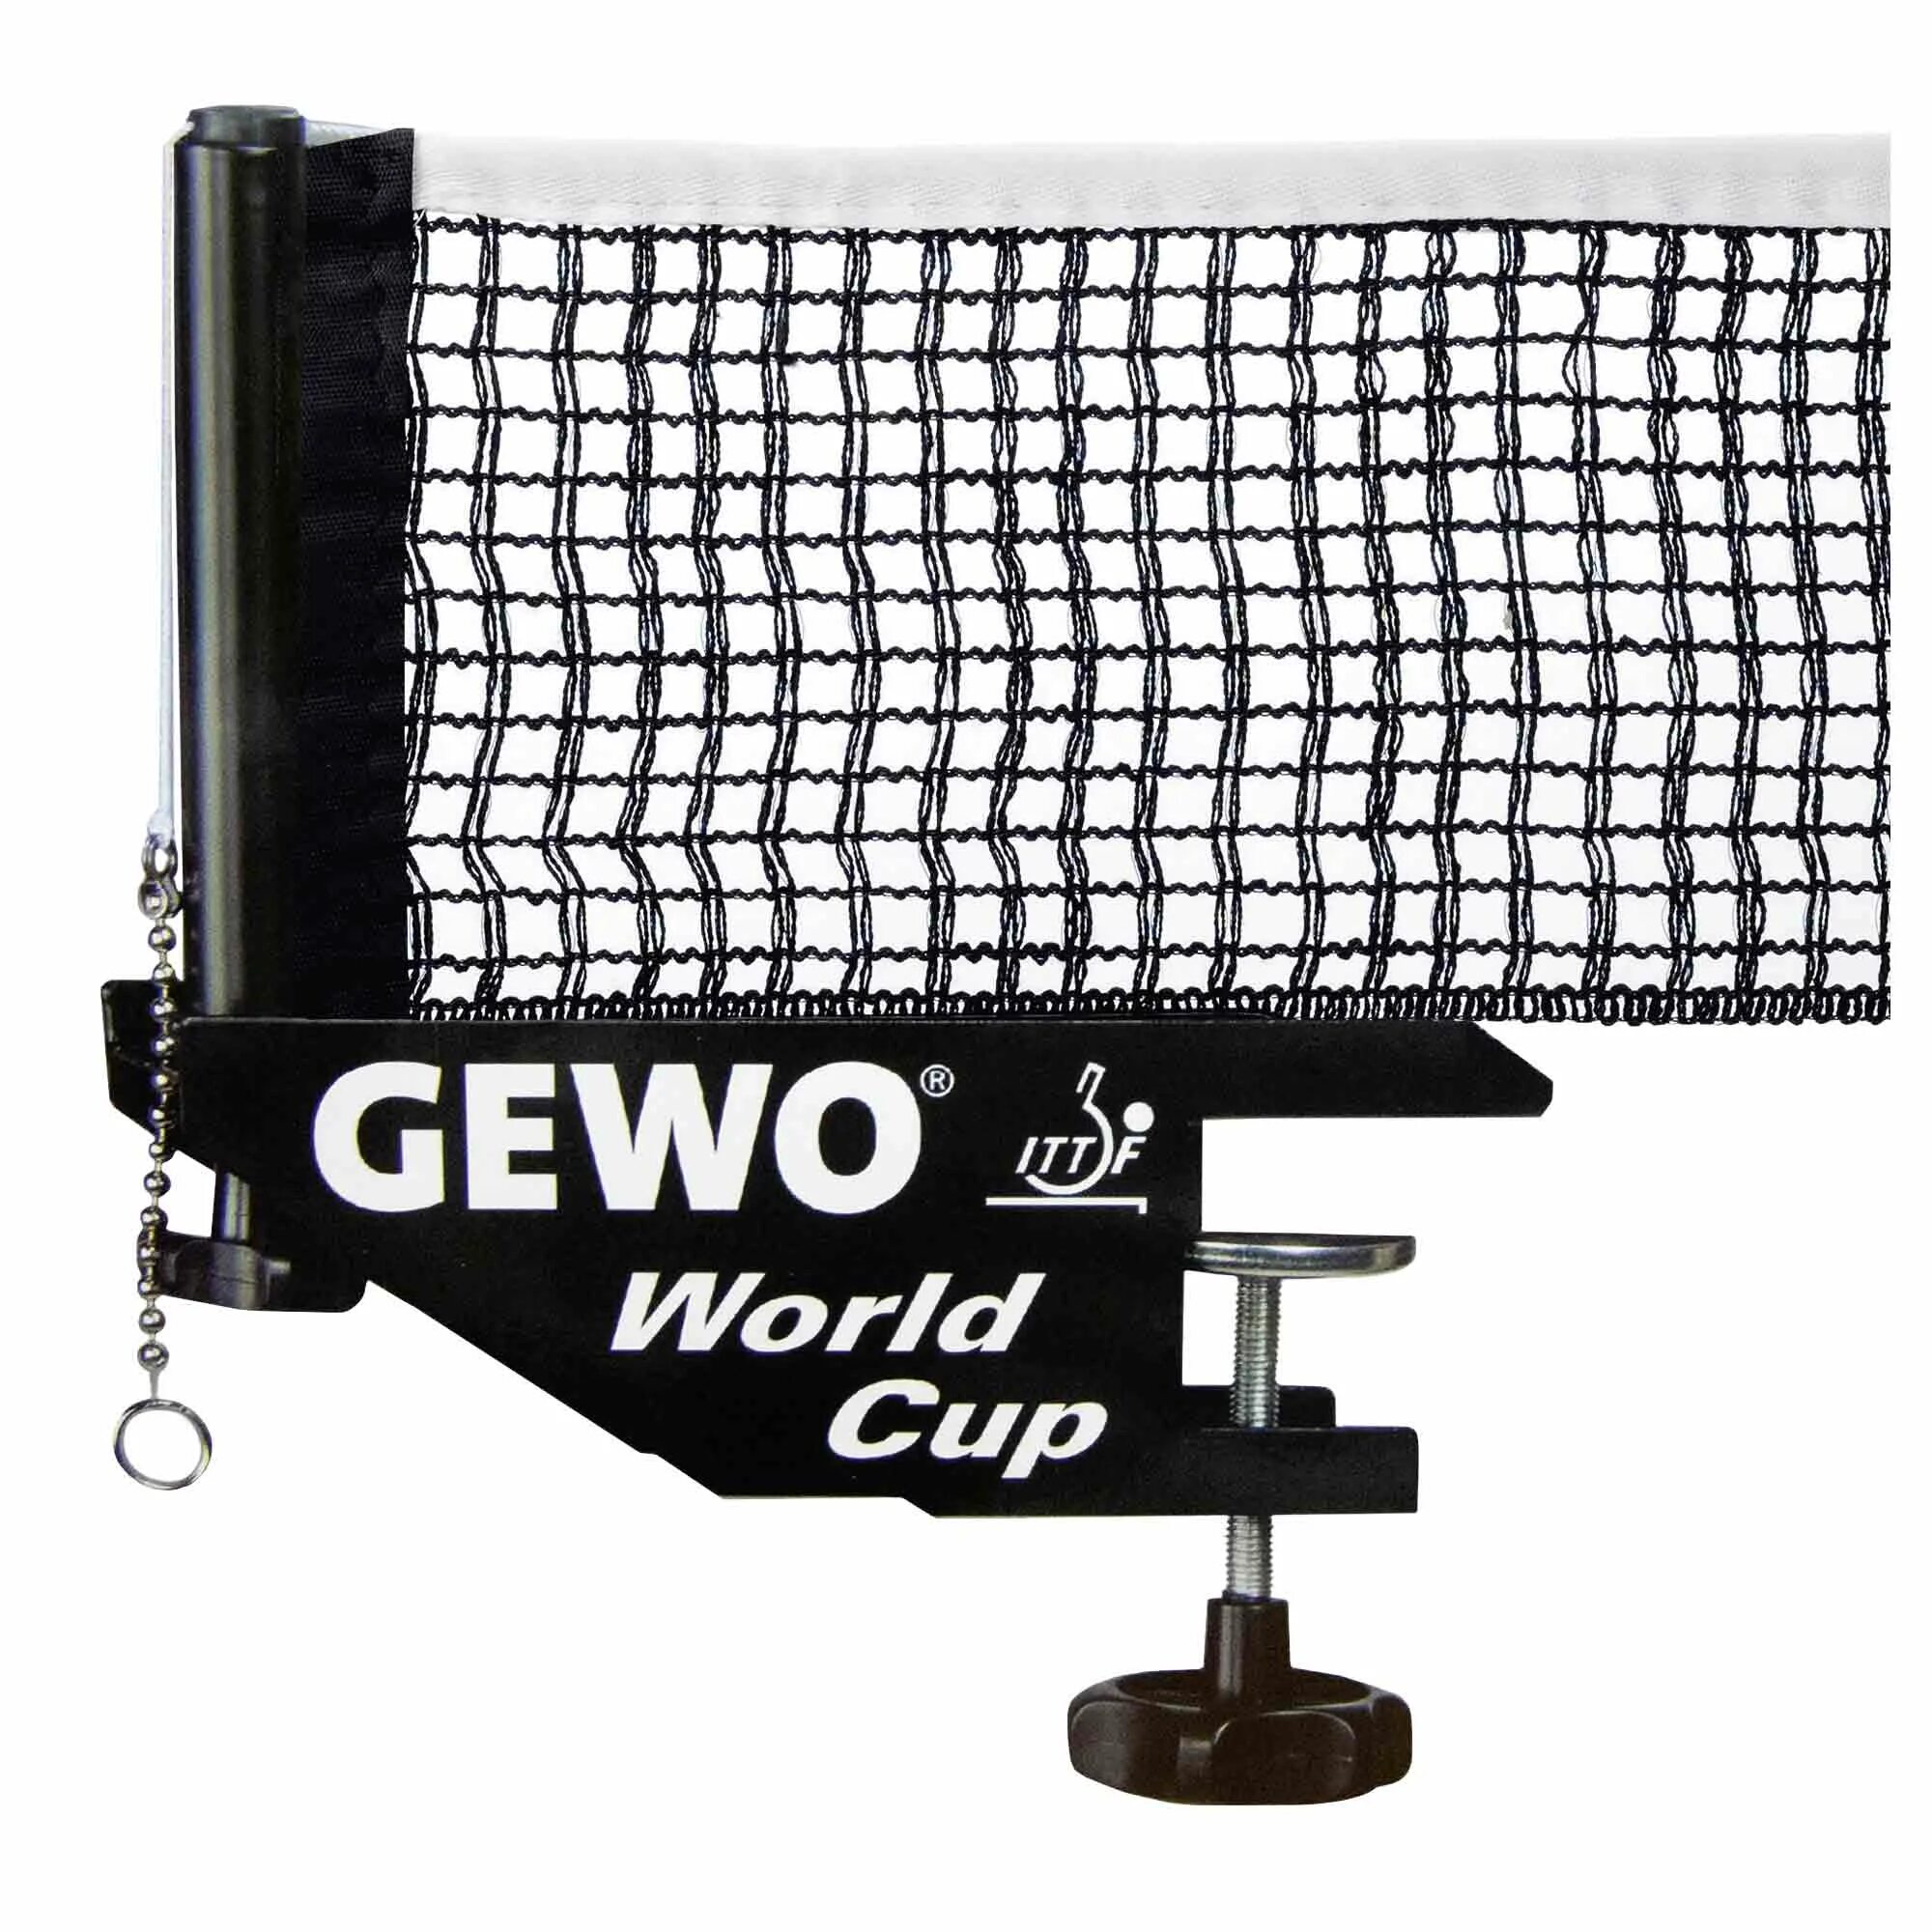 Net cup. Сетка н/т start line Tournament 9819f. Gewo сетка “World Cup” черная. Сетка для настольного тенниса с креплением. Сетка для настольного тенниса с авторегулировкой e33568.